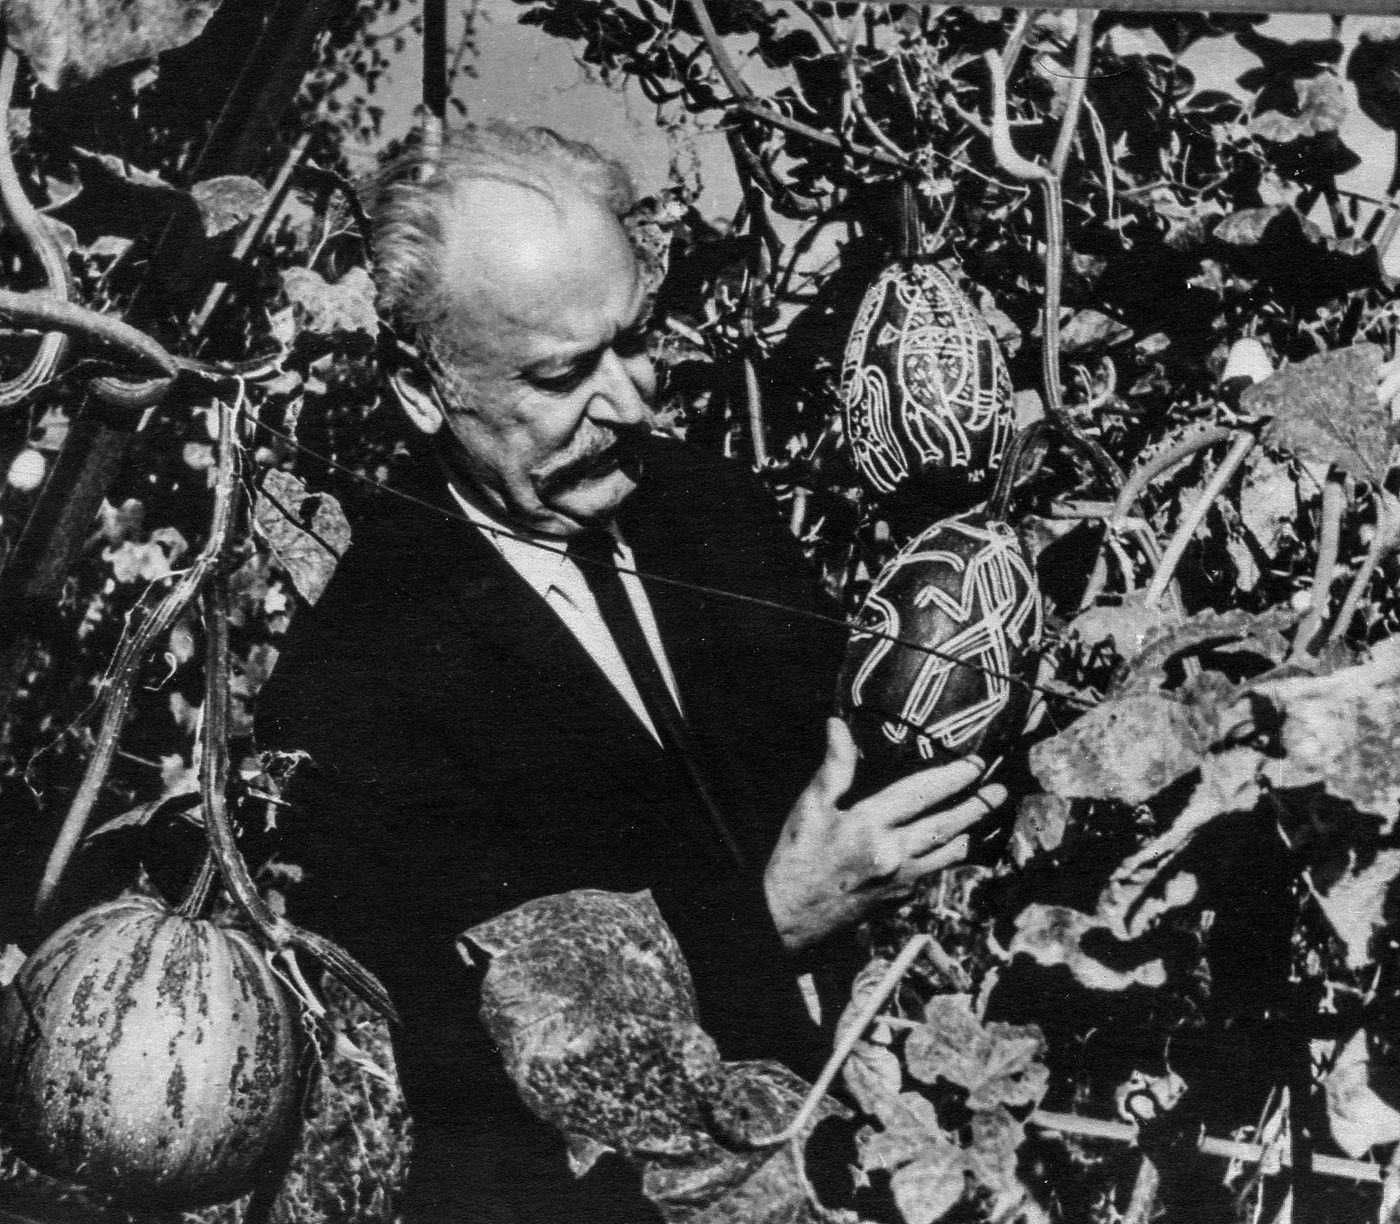 Fedir Manailo in the garden with pumpkins, 1975